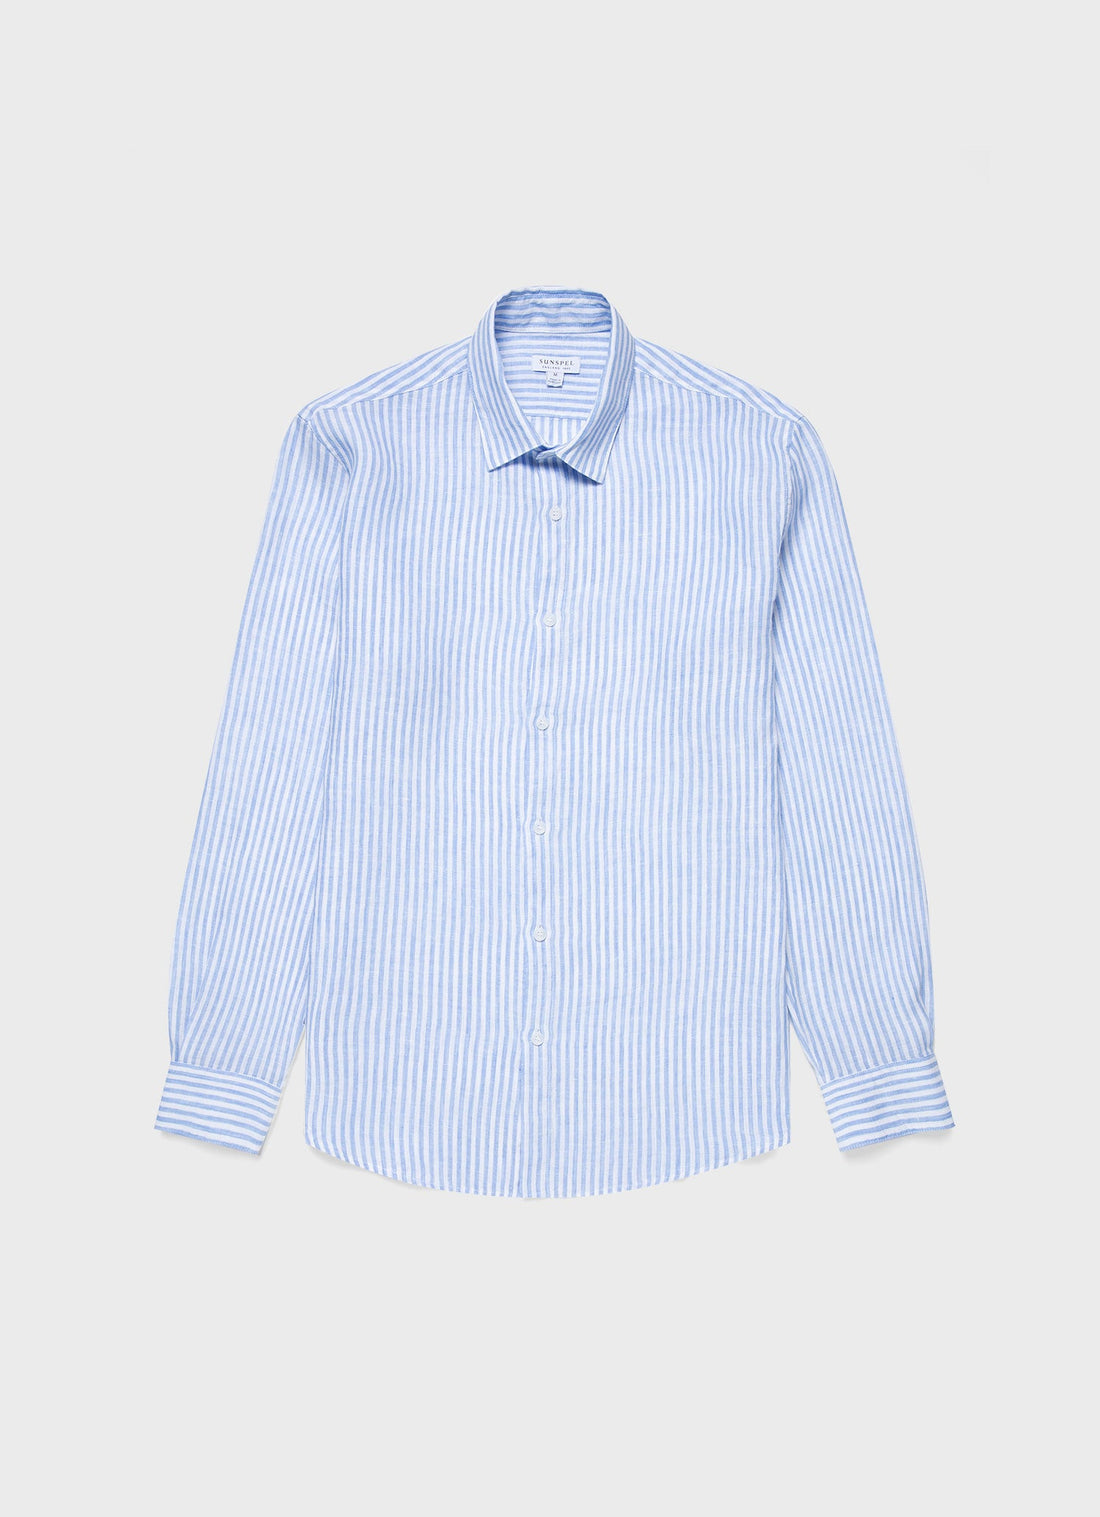 Men's Linen Shirt in Mid Blue/White